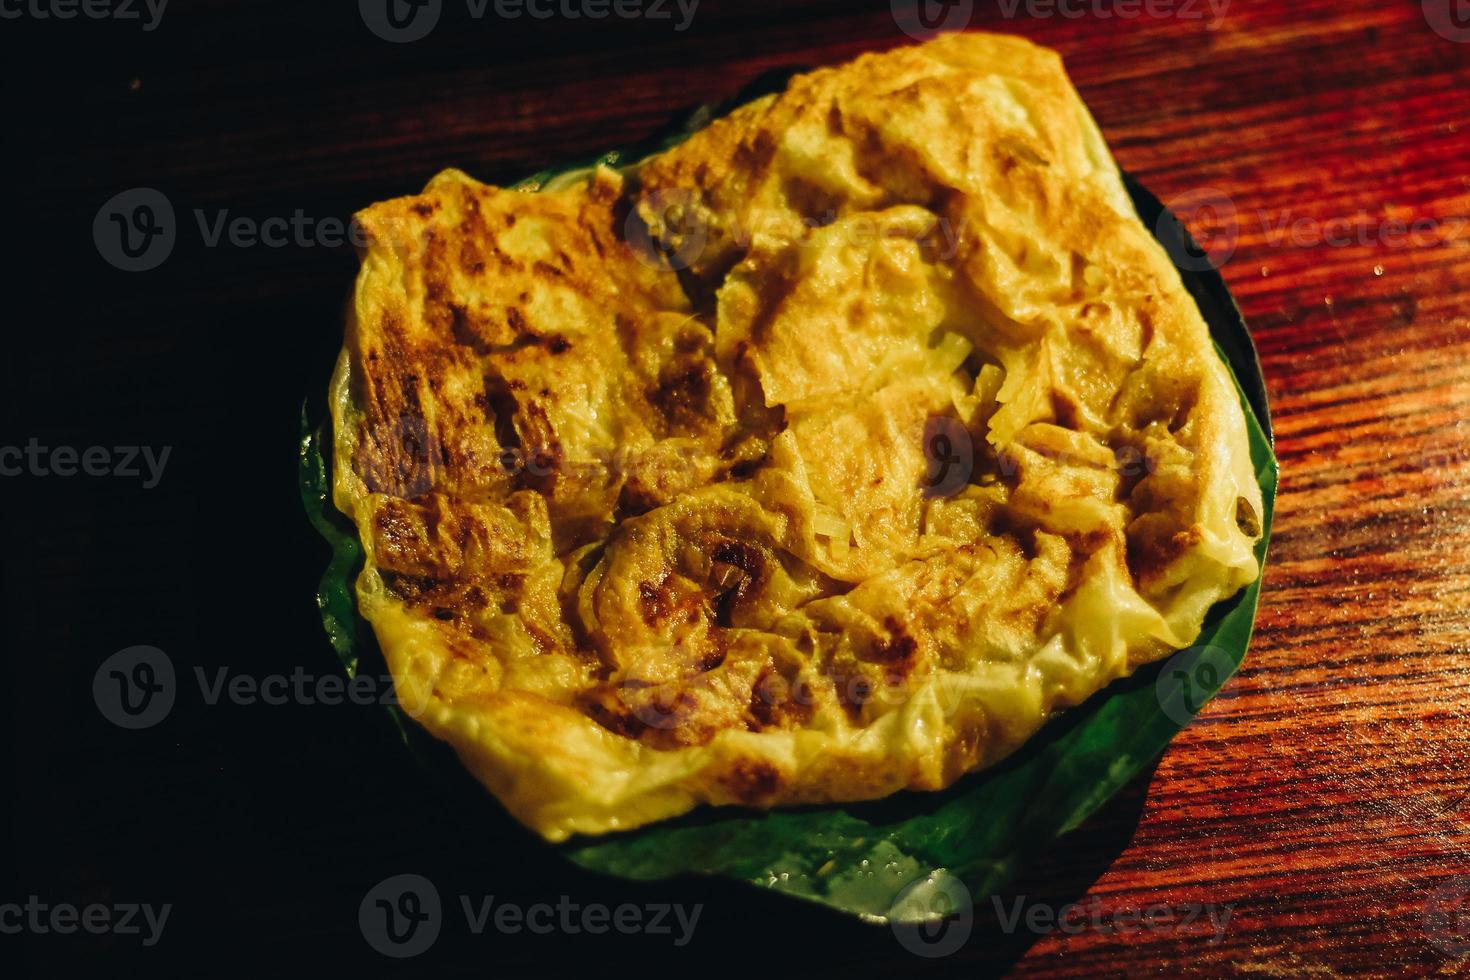 roti canai o pane canai o pane parata o pane prata con salsa al curry sul piatto di foglie di banana isolato su fondo di legno con fondo scuro e riflettori foto